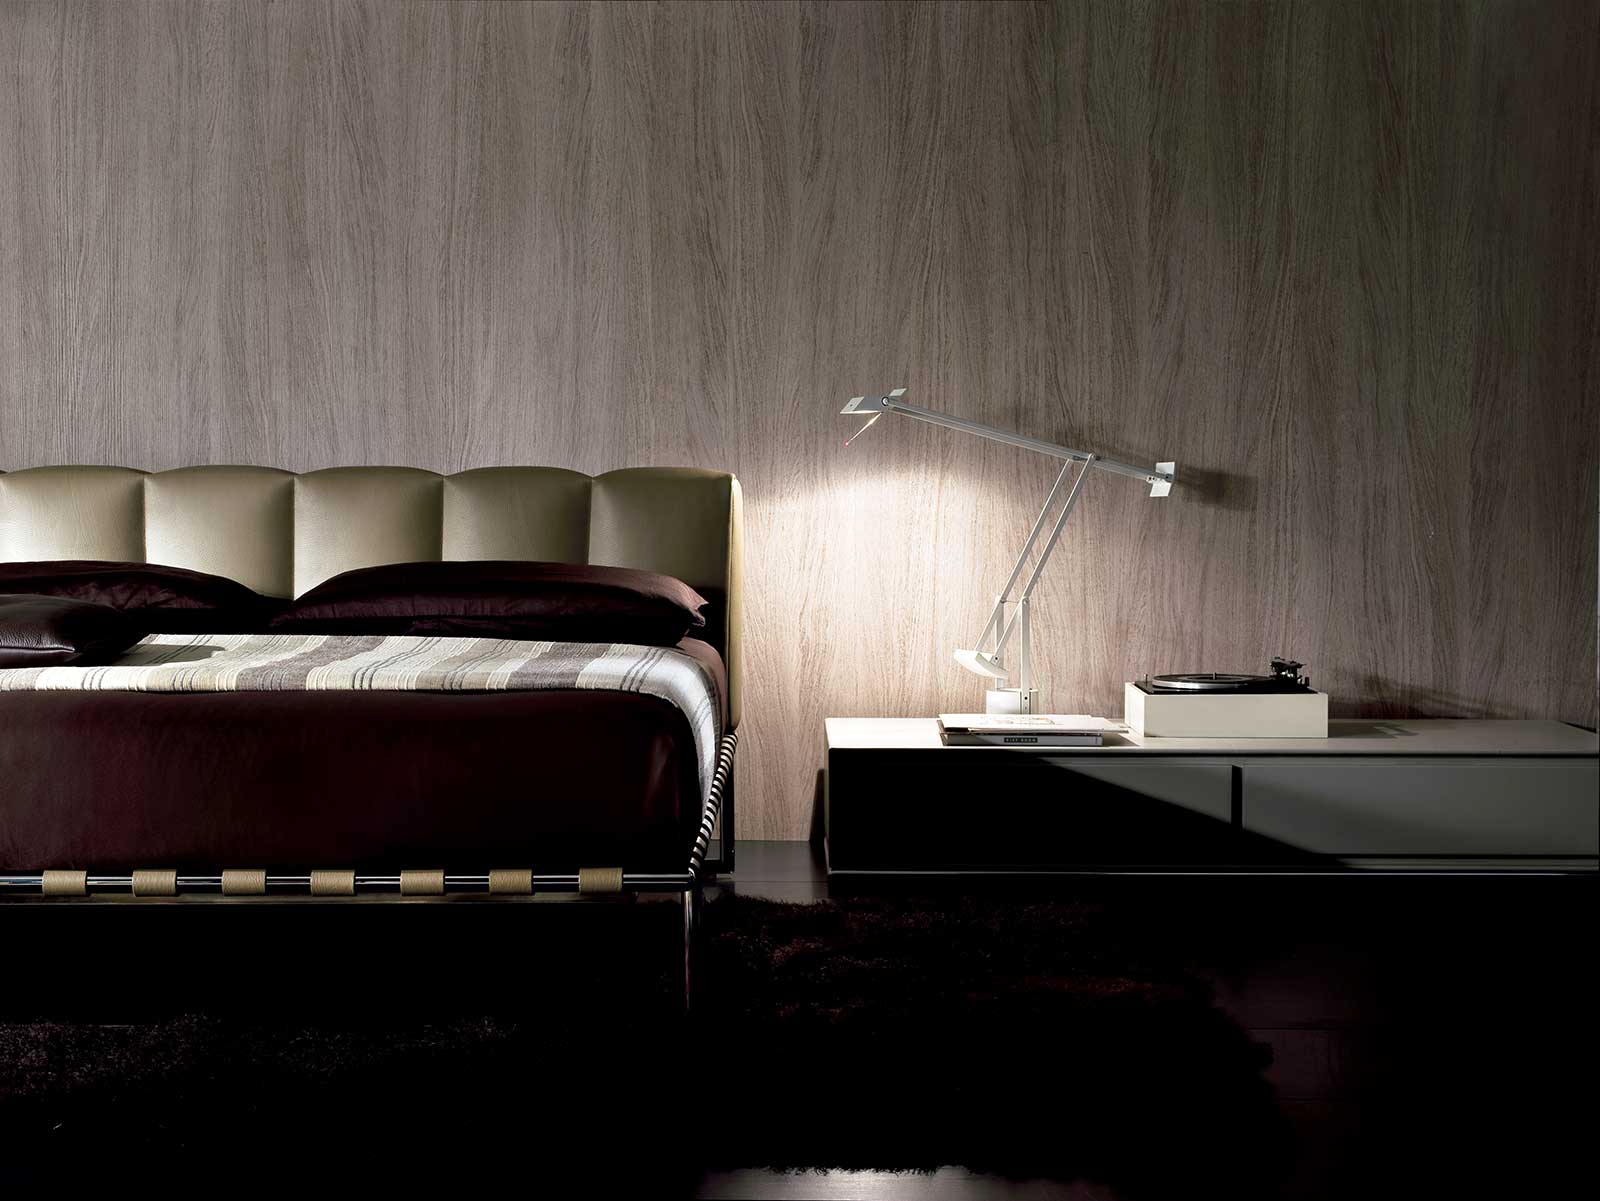 Lit en cuir design haut de gamme réalisé artisanalement en Italie. Vente en ligne de meubles design de luxe originaux et de haute qualité. Livraison gratuite.